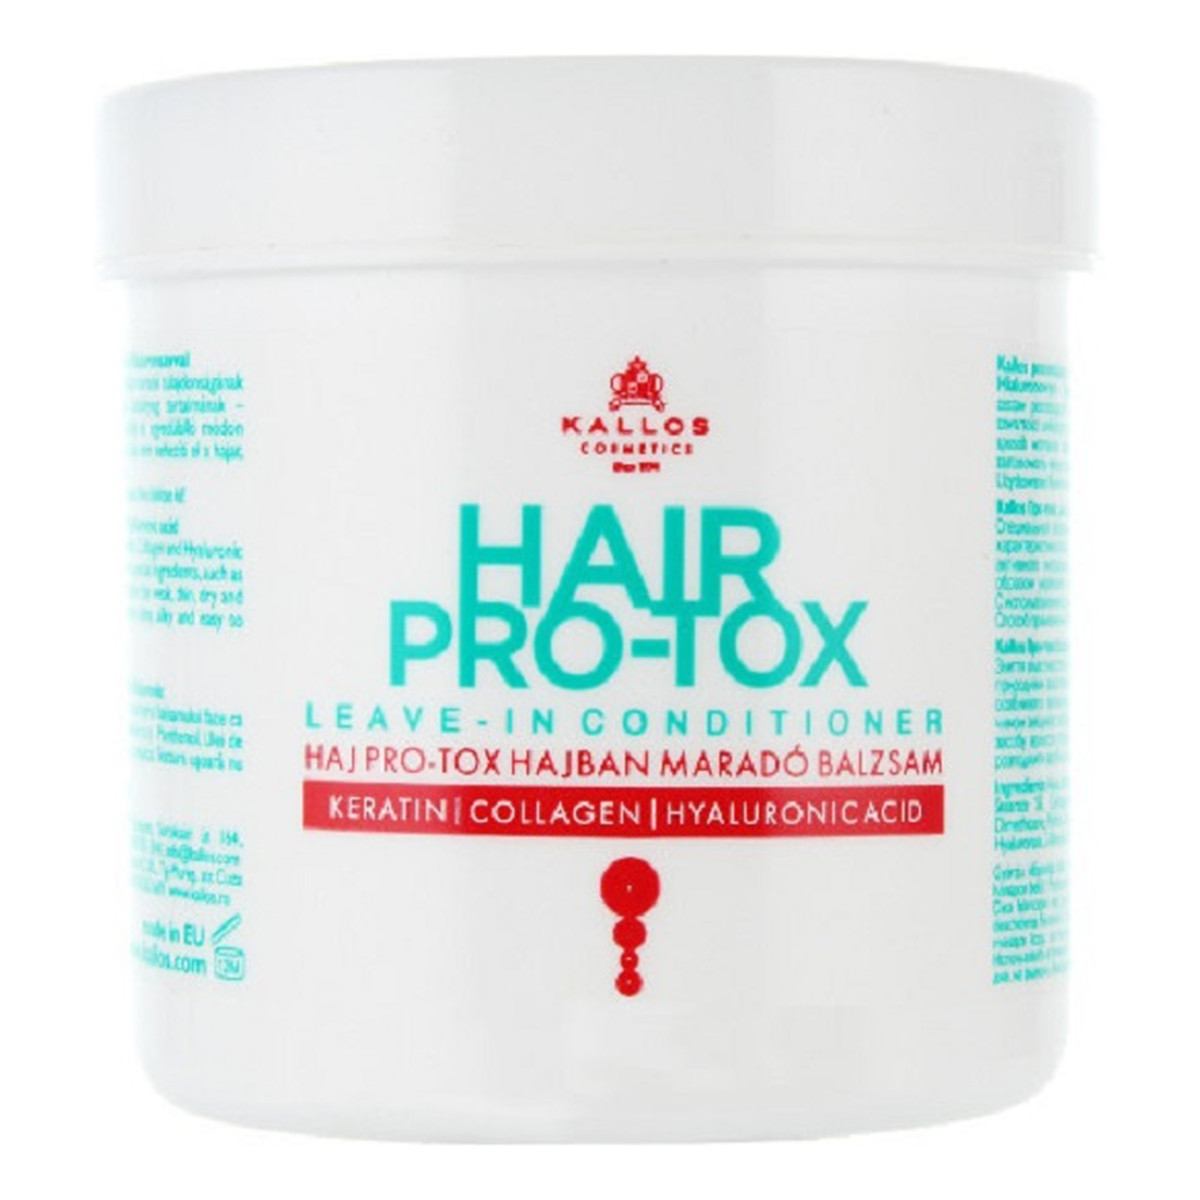 Kallos Hair pro-tox leave-in conditioner odżywka do włosów z keratyną kolagenem i kwasem hialuronowym 250ml